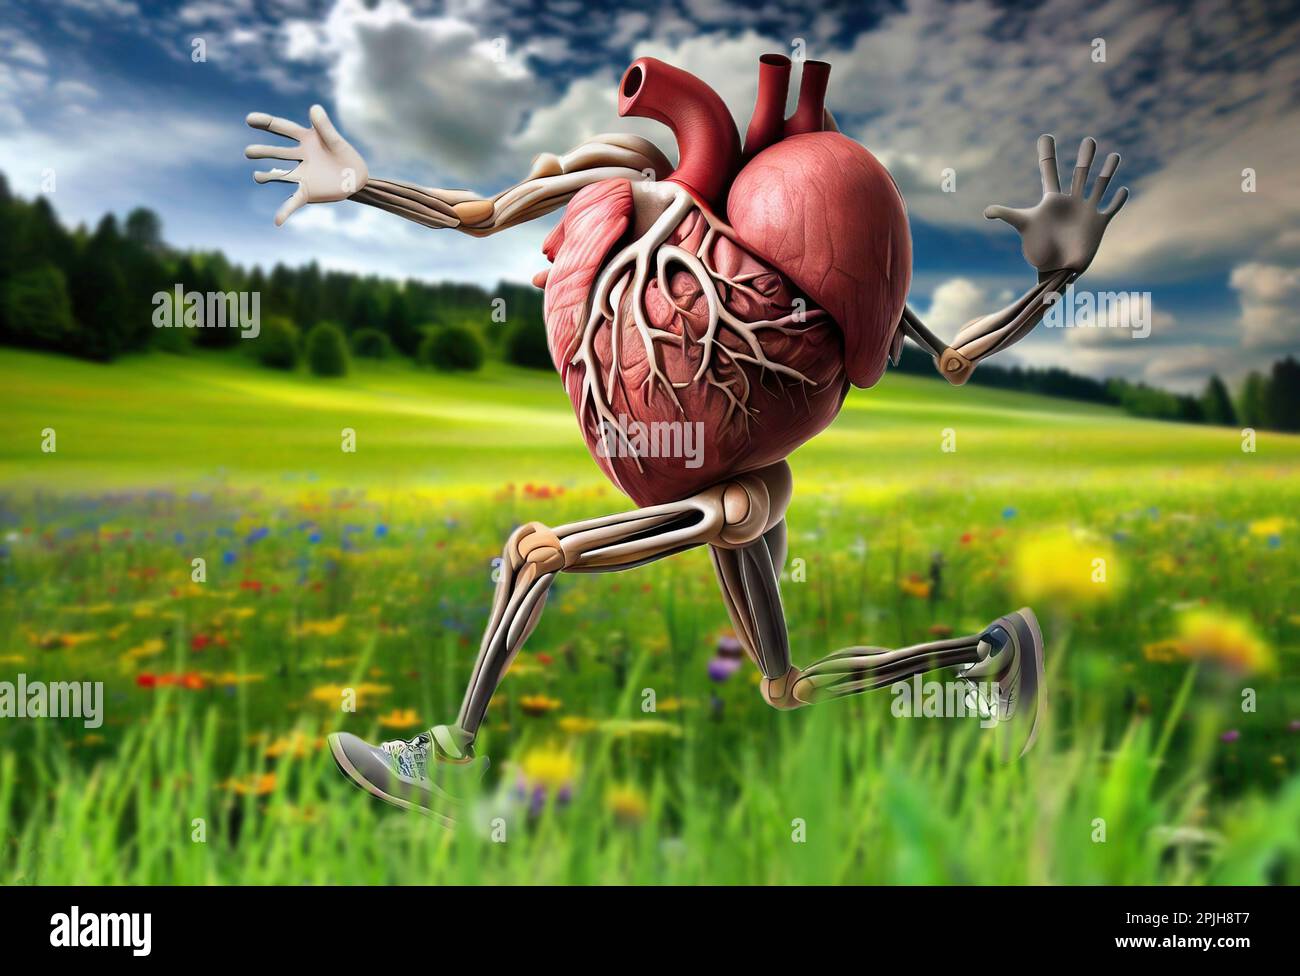 Trainiere dein Herz, ein konzeptionelles Bild eines Herzens, das auf einer wunderschönen Wiese joggt. Stockfoto